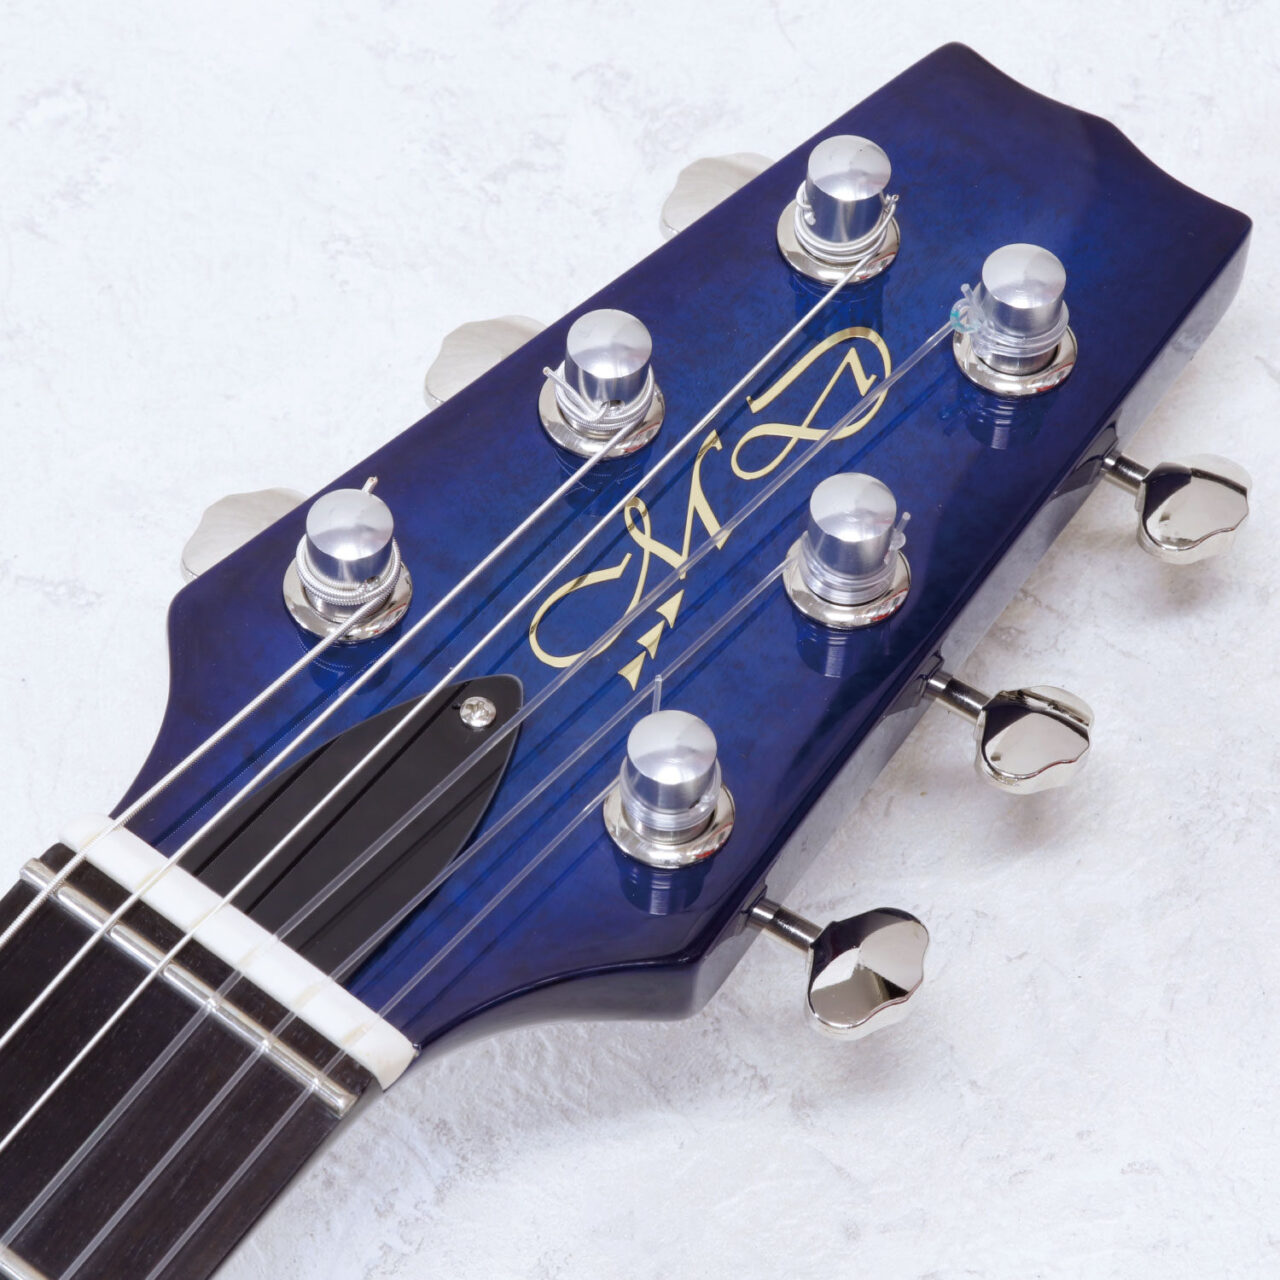 MD-MM Produce SE-01 F See-through Blue (SBL) エレクトリックアコースティックギター